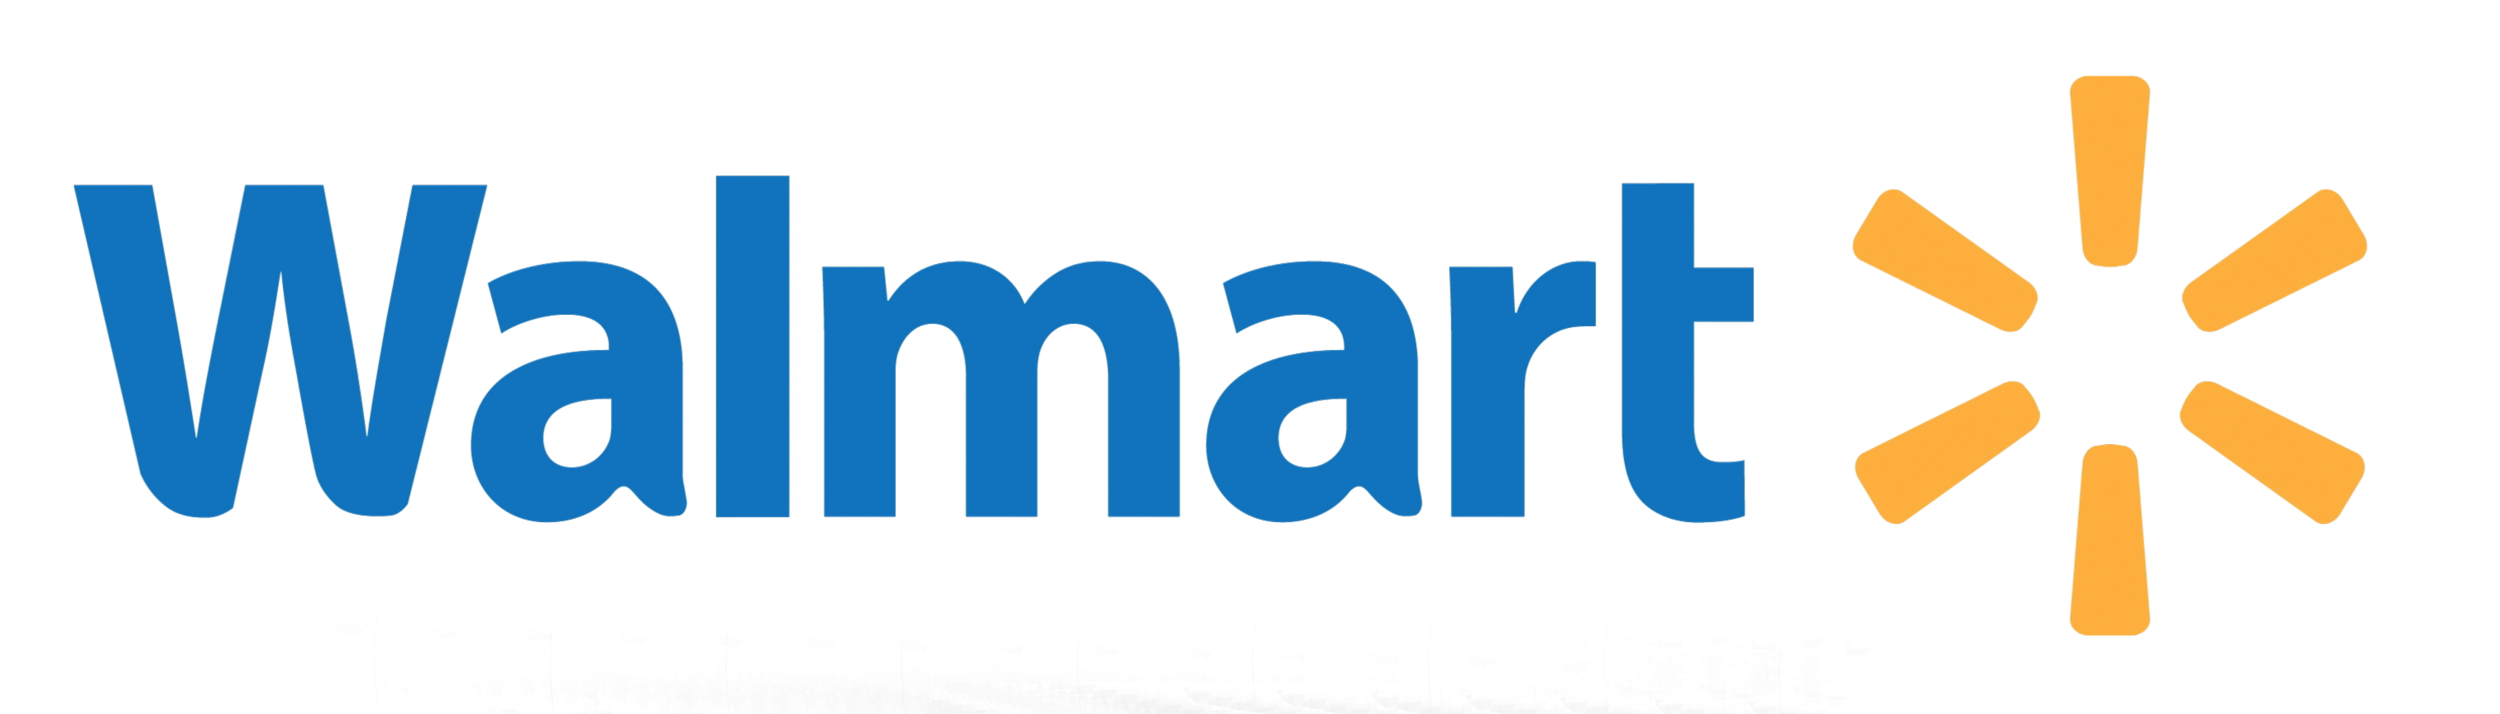 Walmart Logo.png